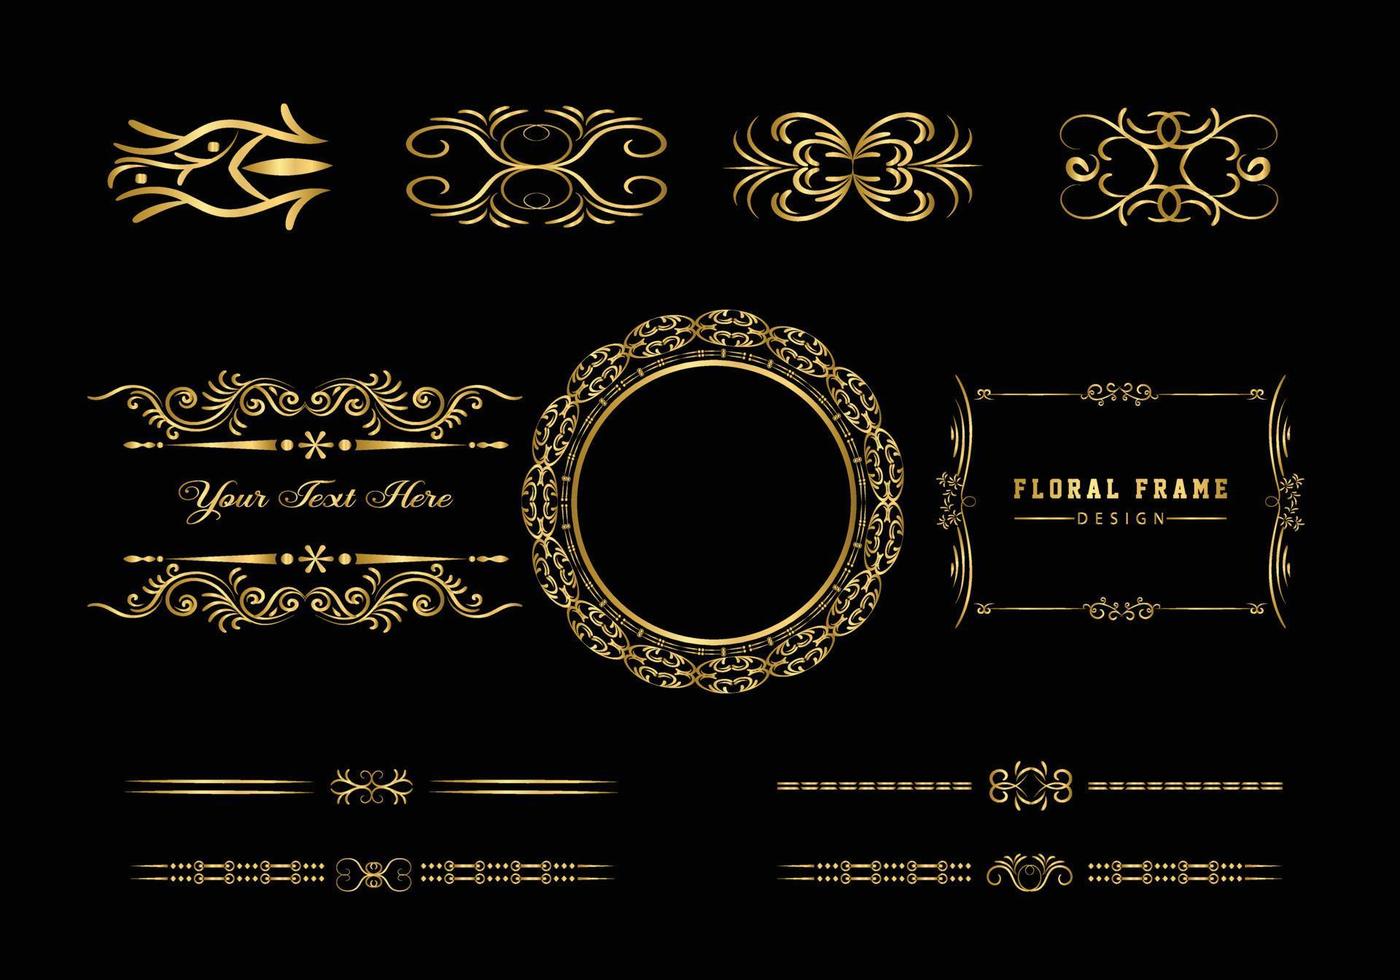 gouden decoratief rond frame voor design met bloemenornament. een sjabloon voor het afdrukken van ansichtkaarten. vector